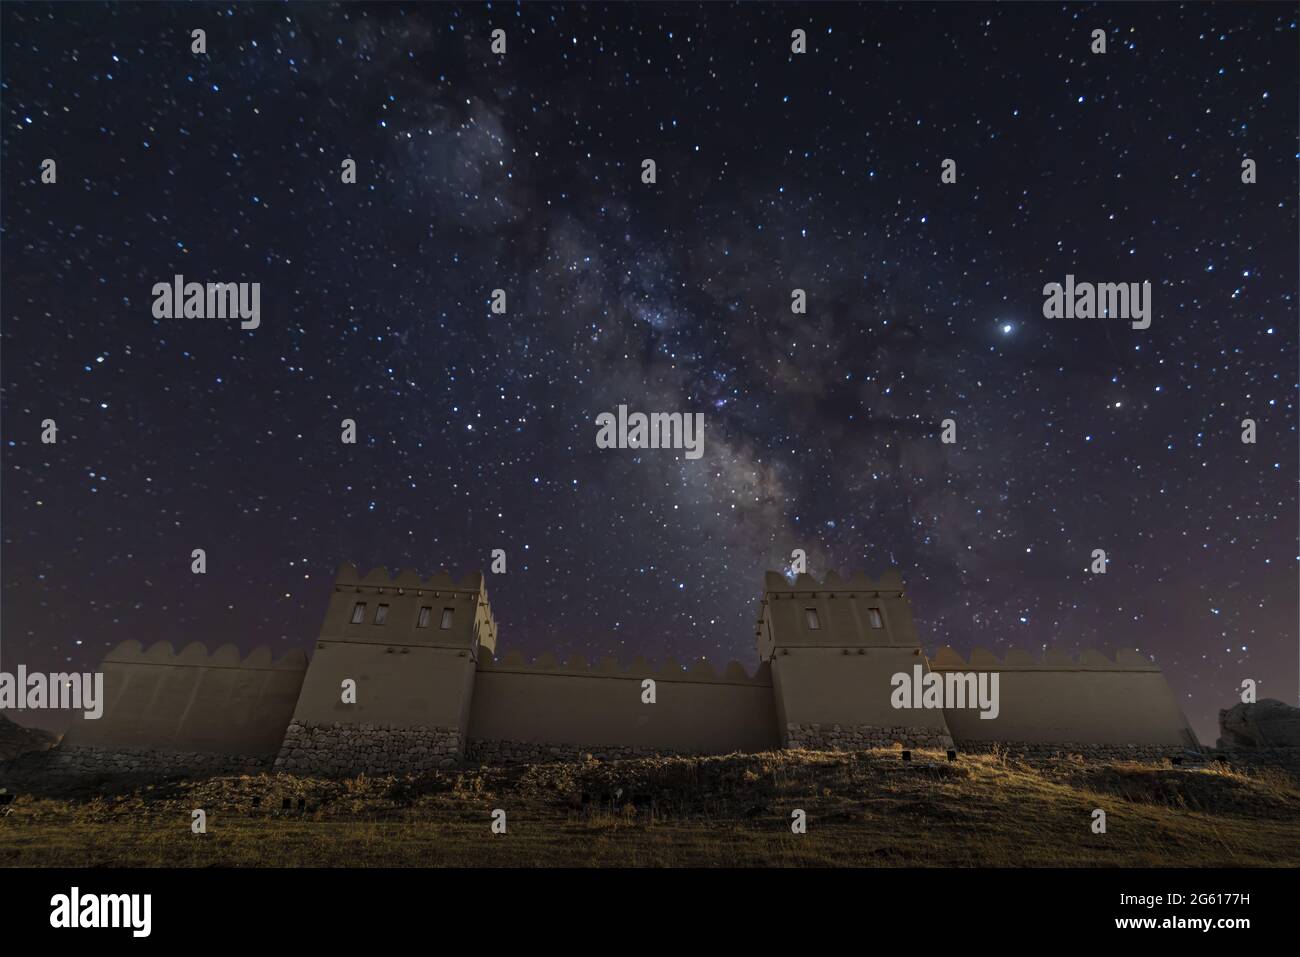 Basso angolo di ripresa delle mura Hittite e del castello di Hattusas, sotto la notte stellata Foto Stock